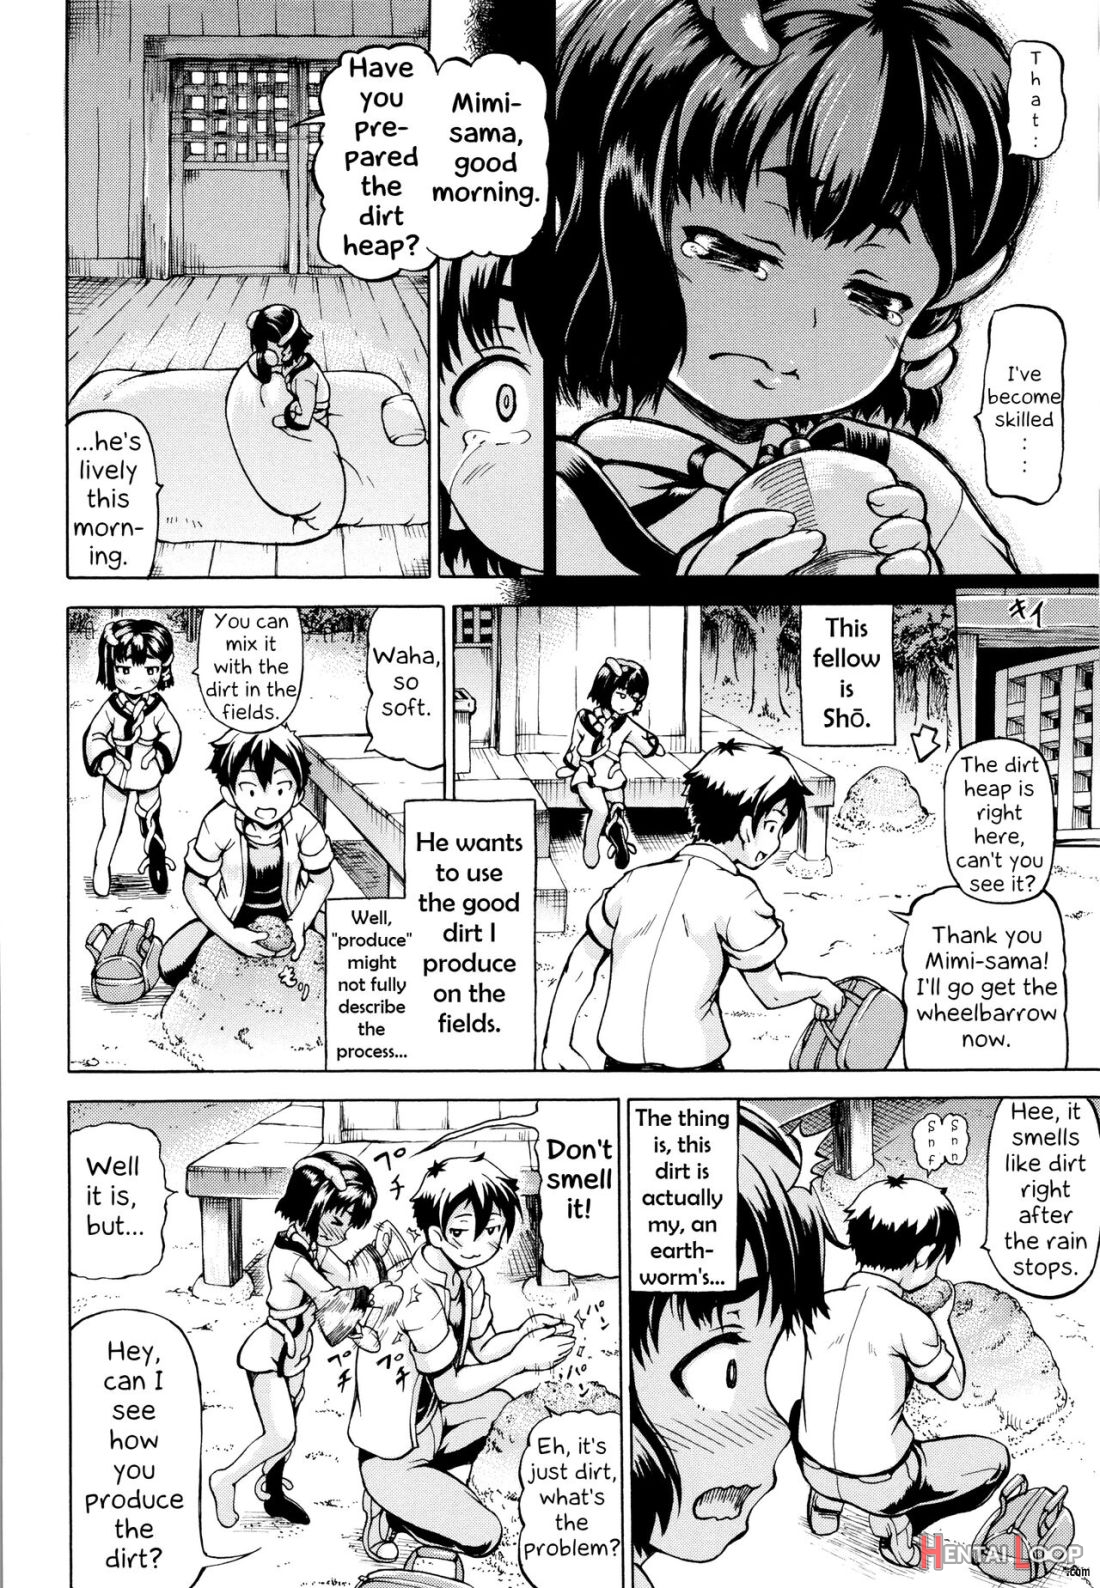 Mimi-sama Okkiku Shite! page 28